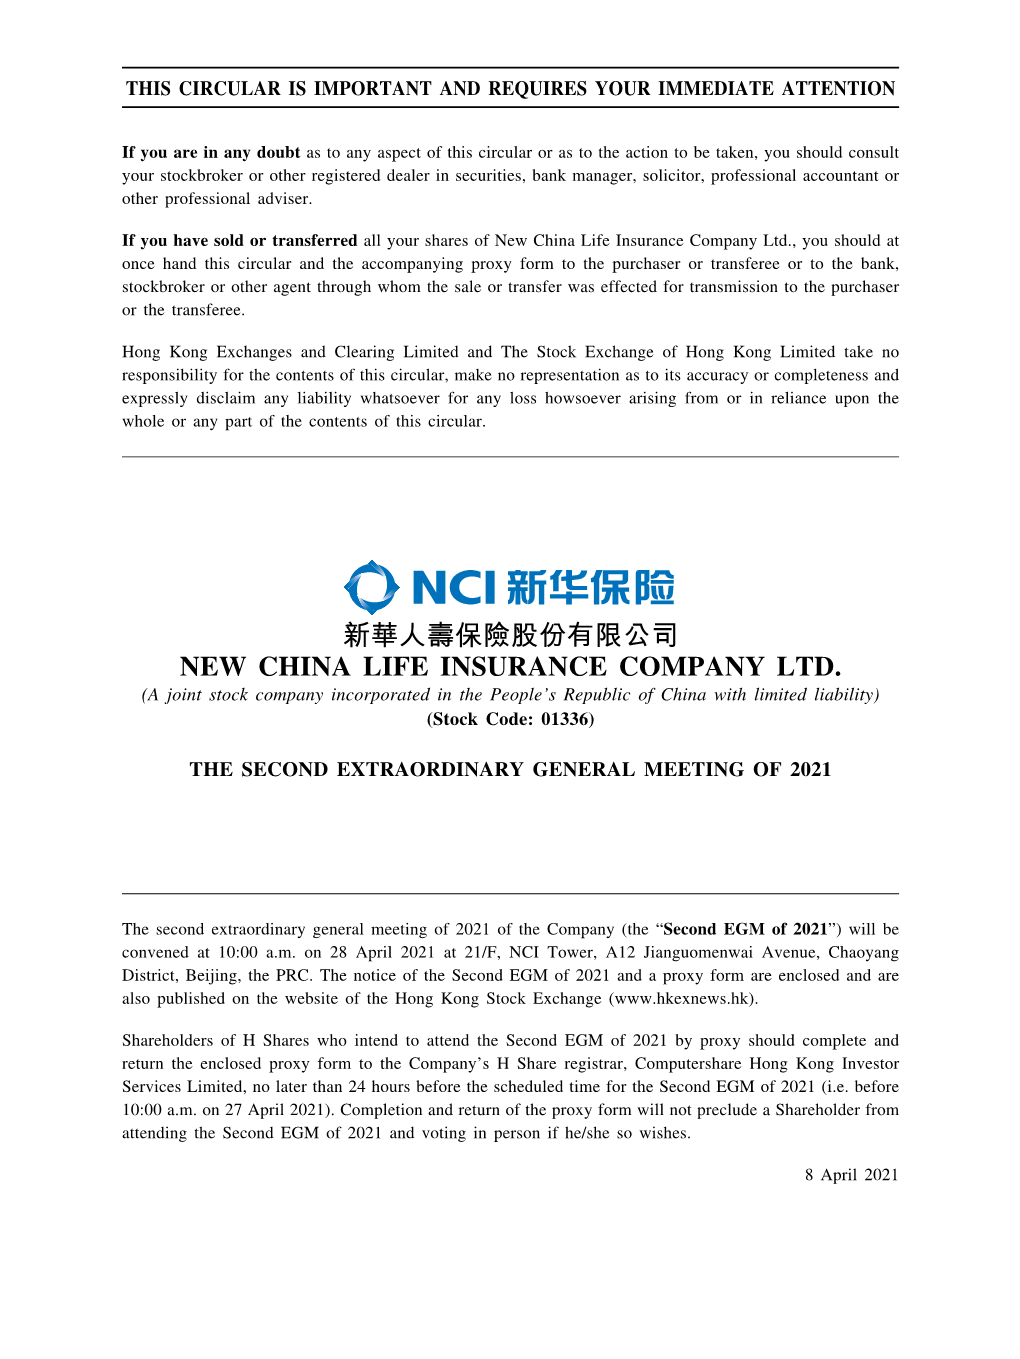 New China Life Insurance Company Ltd